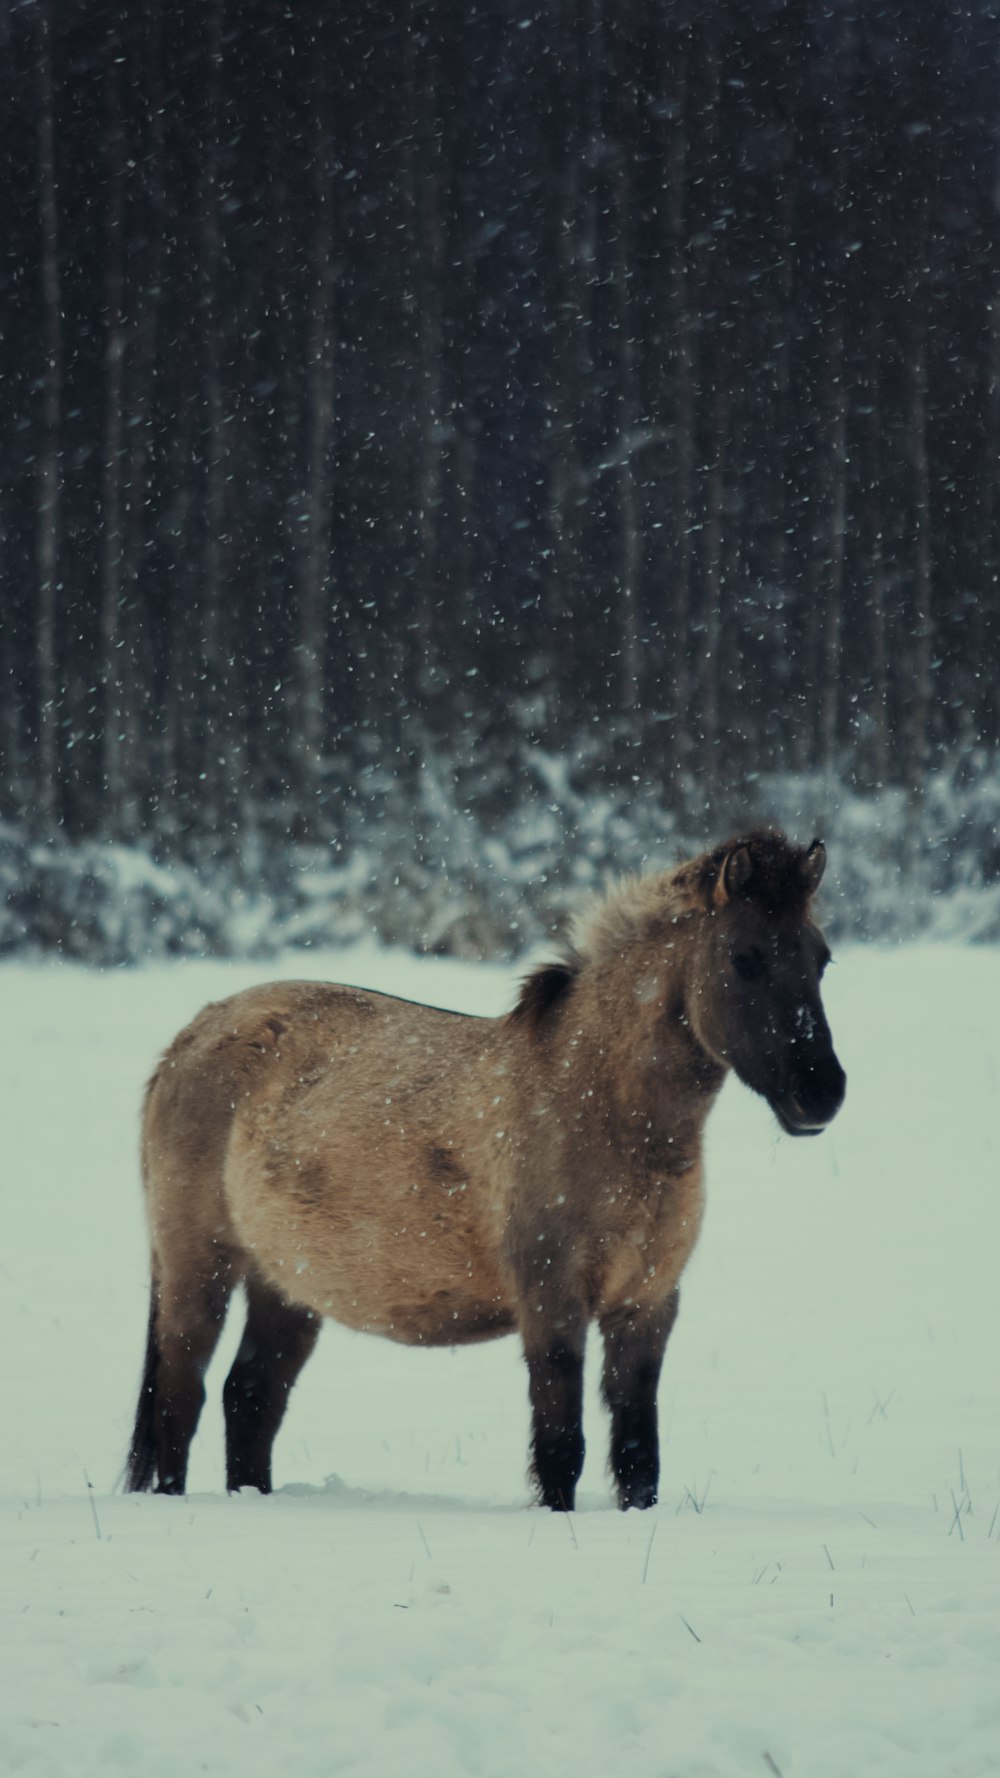 昼間の雪に覆われた地面に茶色の馬